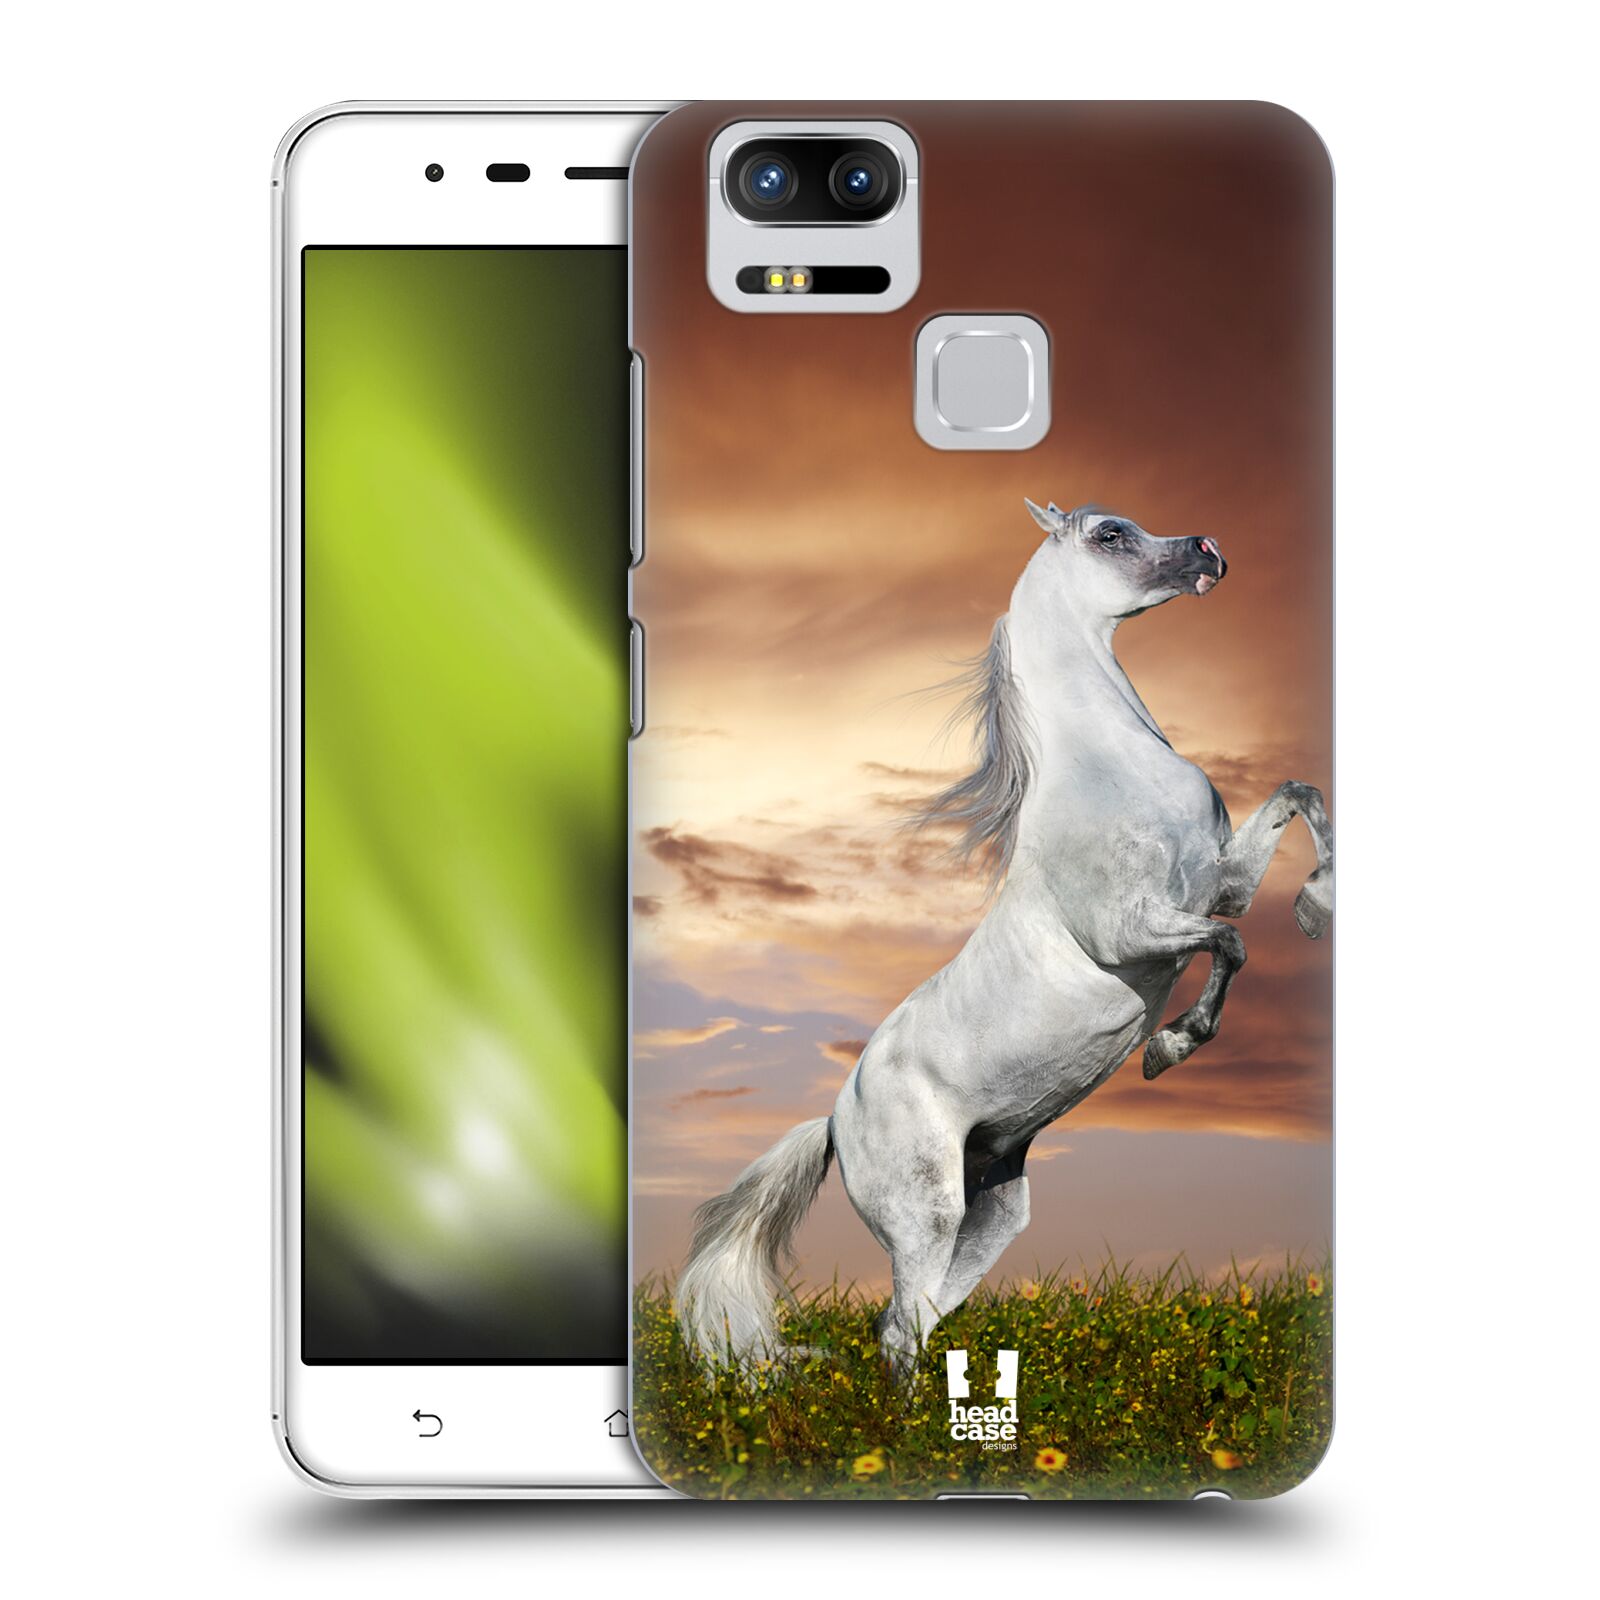 HEAD CASE plastový obal na mobil Asus Zenfone 3 Zoom ZE553KL vzor Divočina, Divoký život a zvířata foto DIVOKÝ KŮŇ MUSTANG BÍLÁ